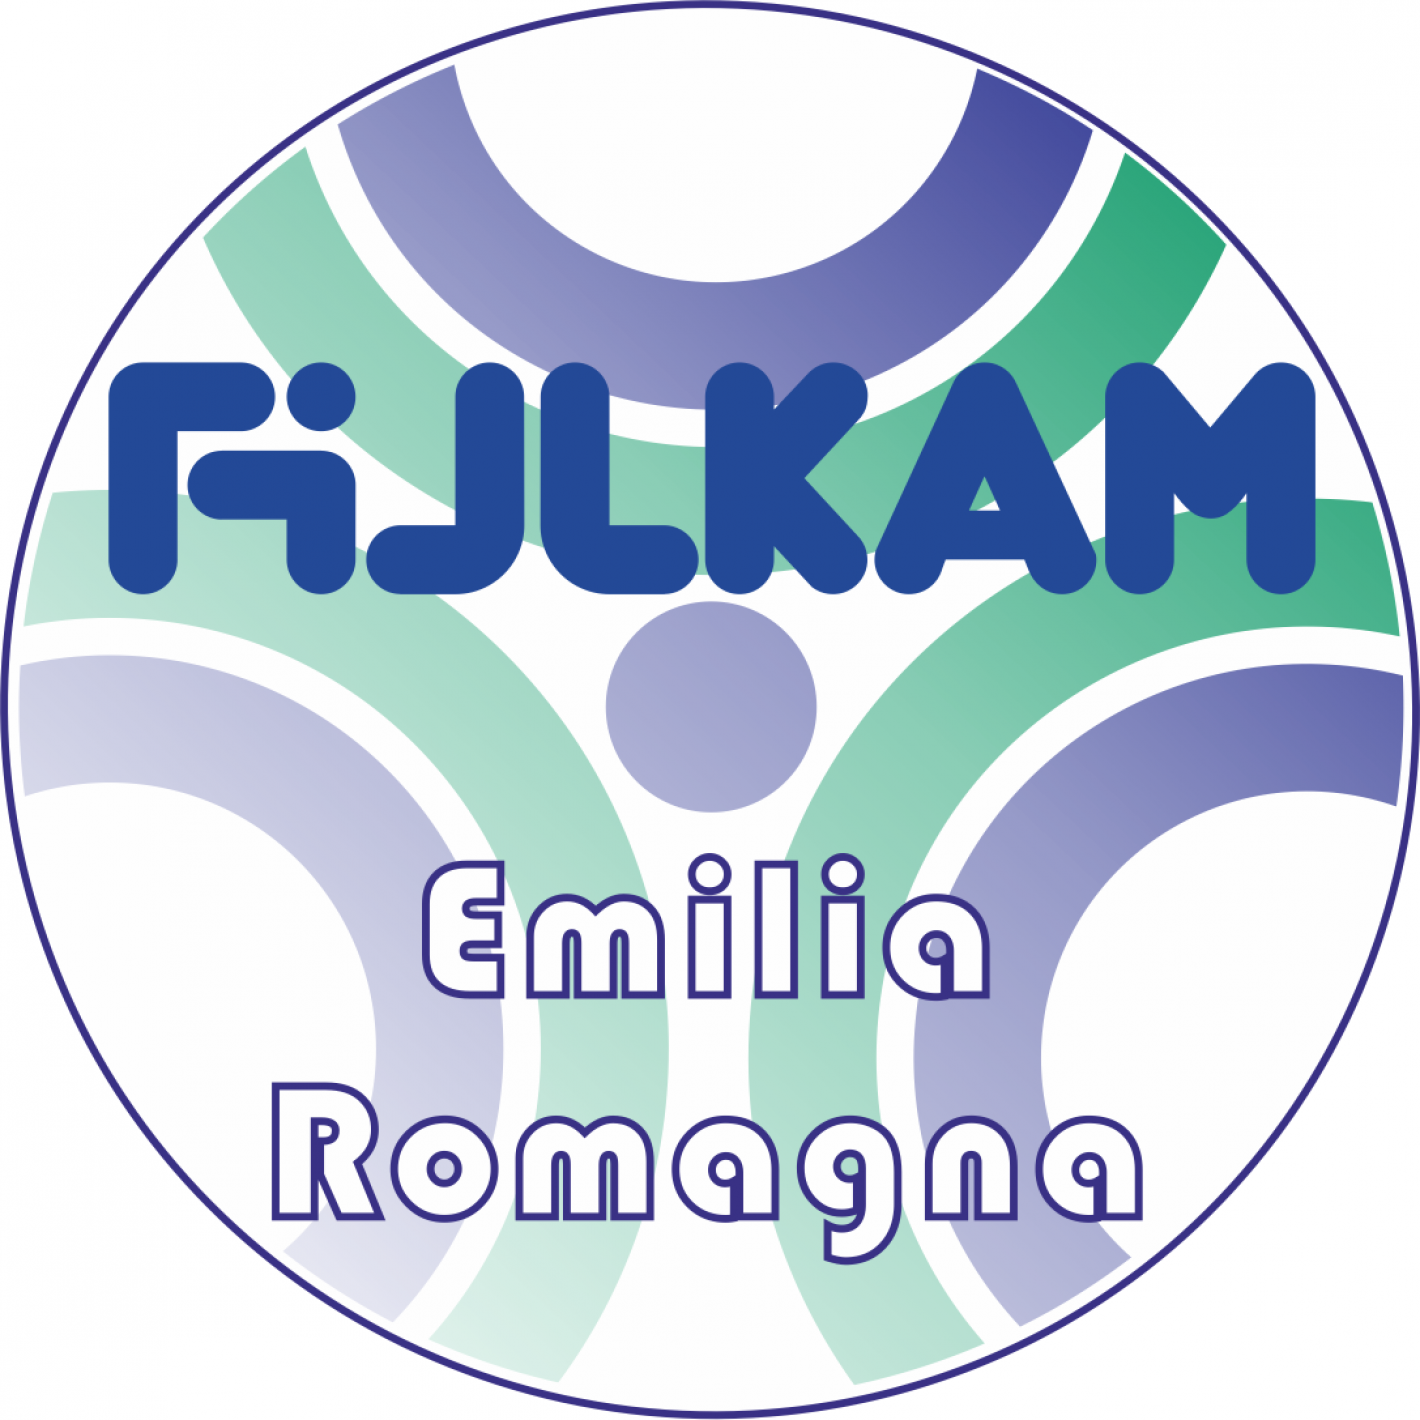 images/emilia_romagna/articoli/medium/Regione_Emilia_Romagna_2_FIJLKAM.png